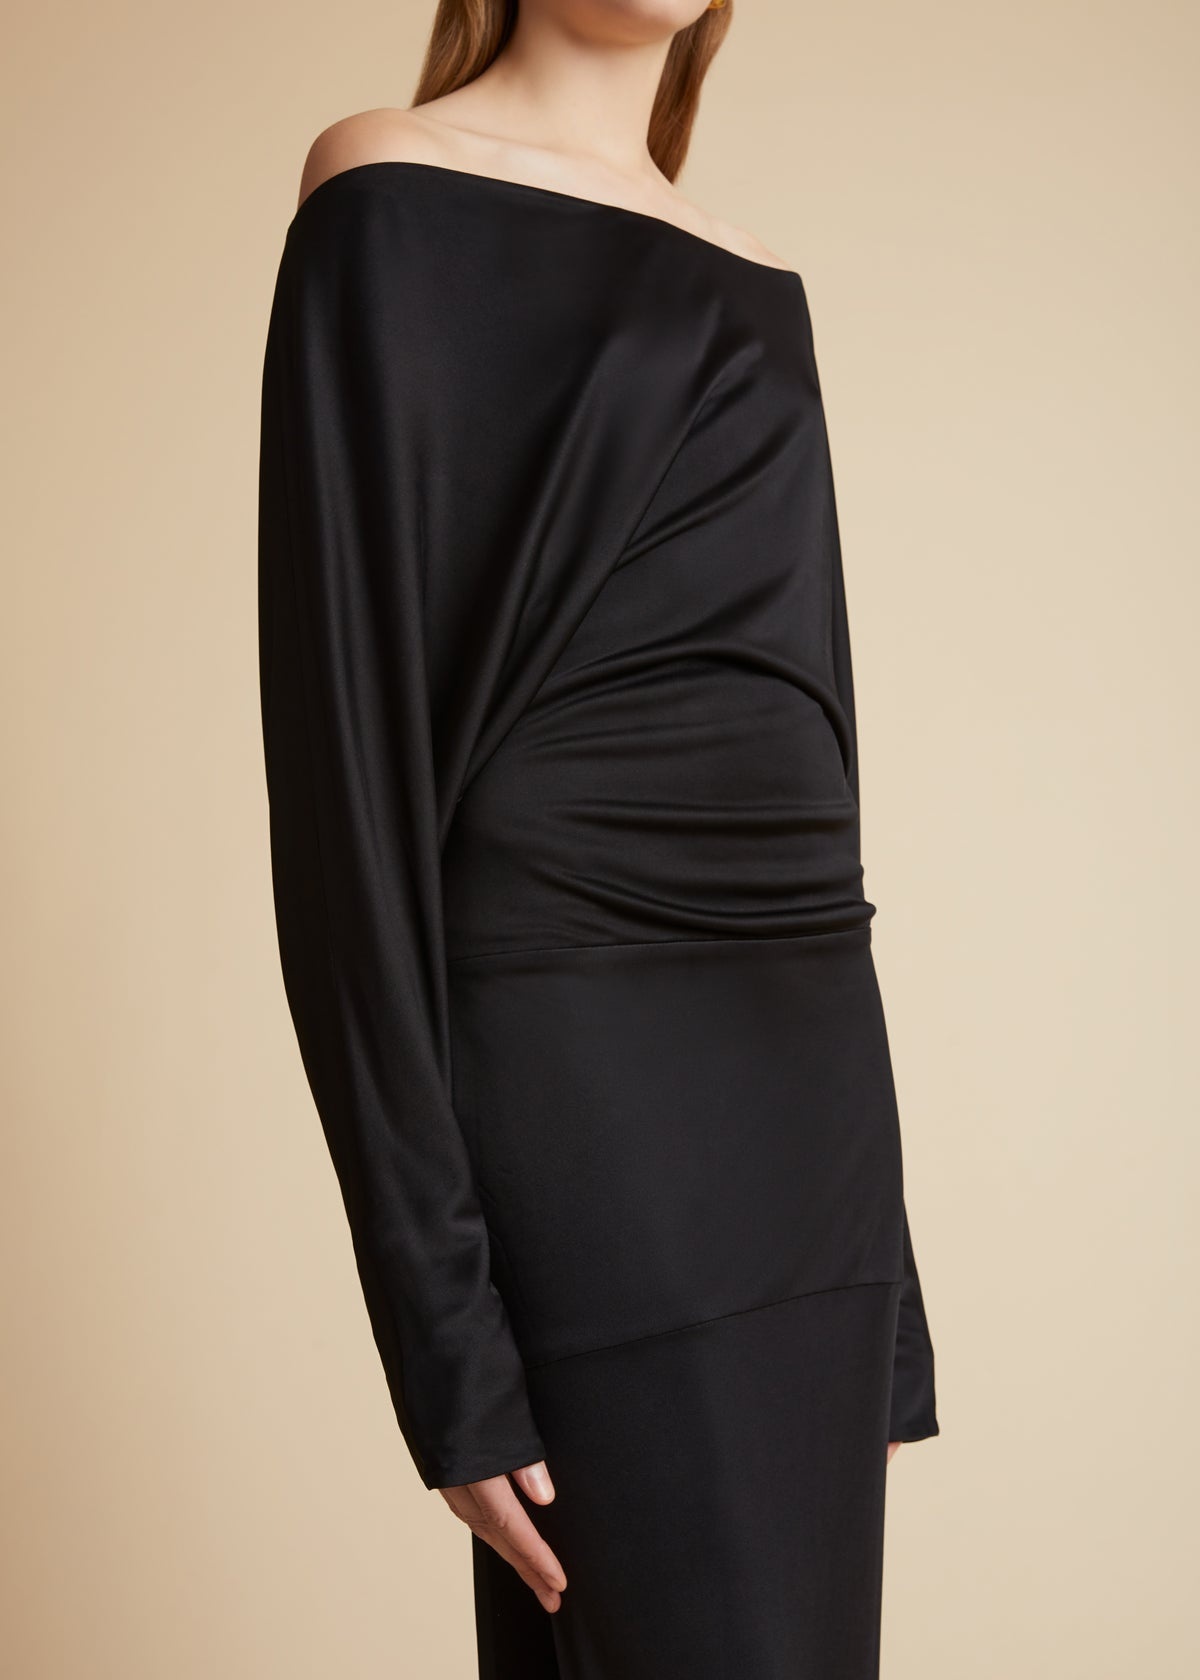 The Junet Dress in Black - 4